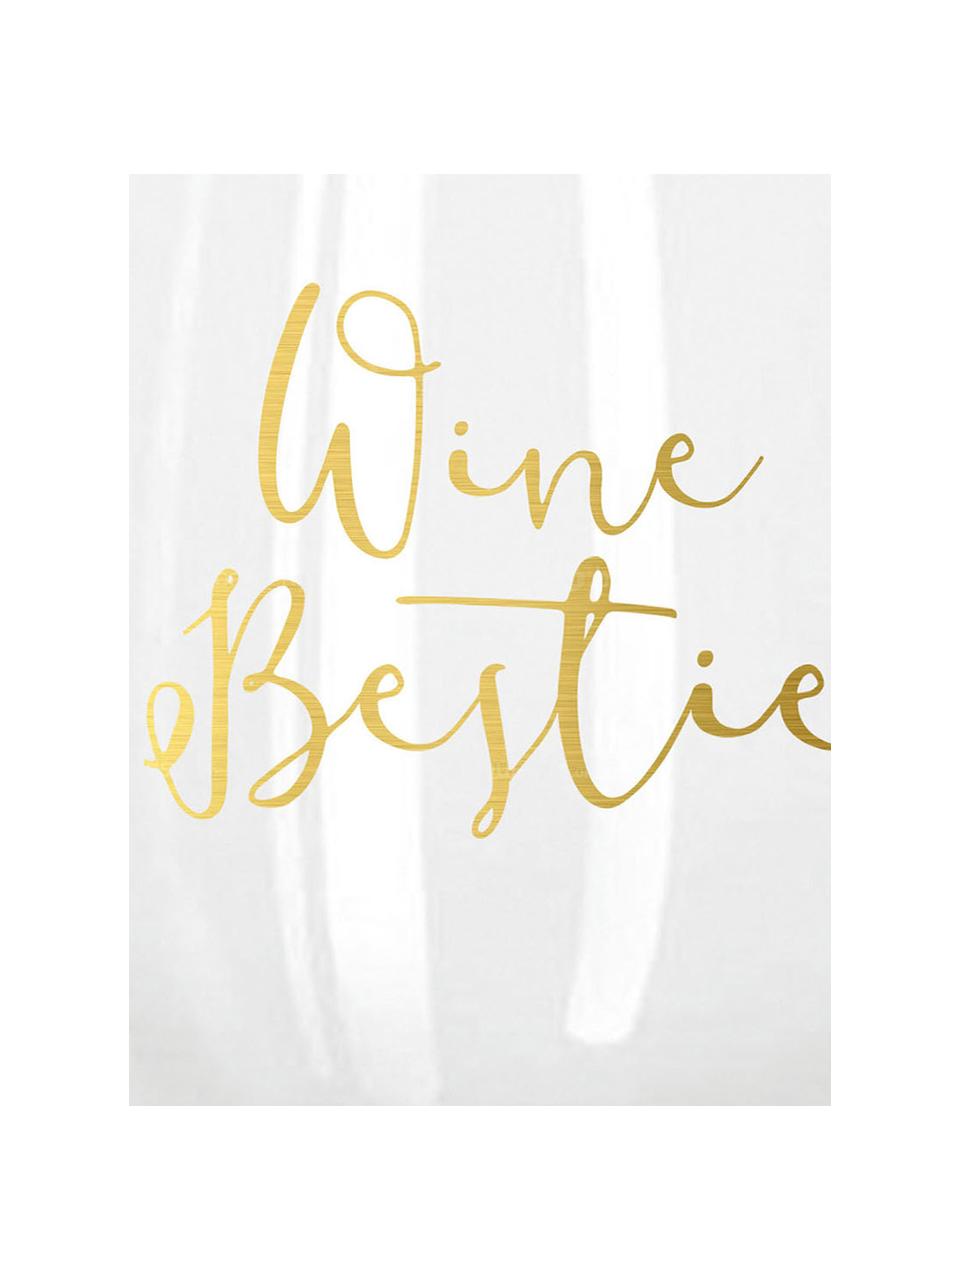 Bicchiere con scritta dorata Wine Bestie 2 pz, Vetro, Trasparente, dorato, Ø 10 x Alt. 13 cm